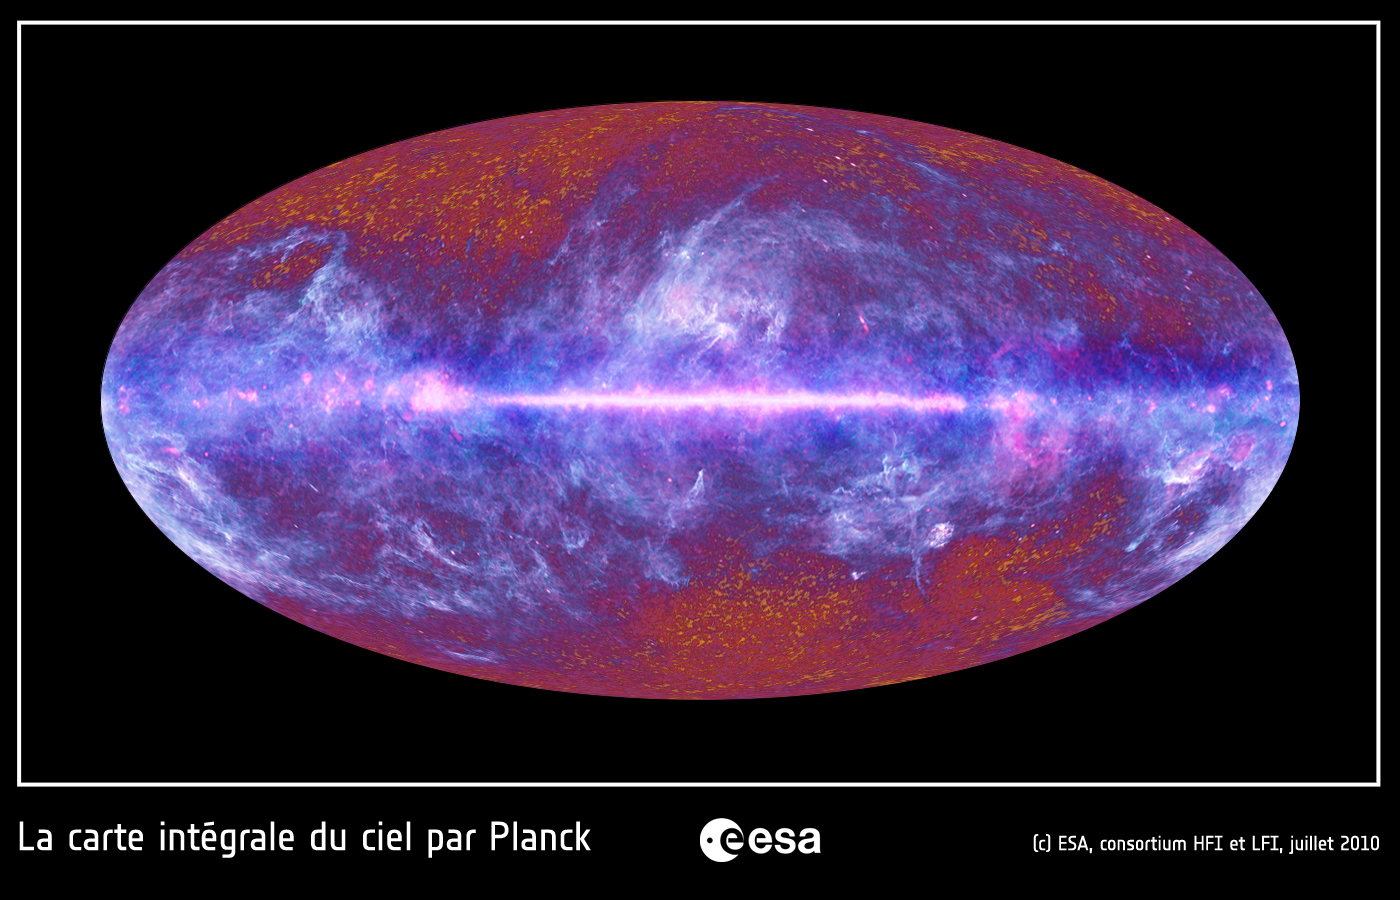 Le ciel micro-ondes vu par le satellite Planck. Cette image couleur a été créée à partir des données Planck obtenues dans neuf bandes de fréquence, comprises entre 30 et 857 GHz, c'est-à-dire dans le domaine des ondes submillimétriques, millimétriques et centimétriques (aussi appelées micro-ondes). Notre Galaxie, la Voie lactée, est bien visible dans l'image comme une bande claire horizontale. Une grande région du ciel est illuminée par notre Galaxie, comme en témoignent ces structures claires et filamenteuses qui s'étendent bien au-delà du plan de notre Voie lactée. Ces émissions ont pour origine le gaz et les poussières du milieu interstellaire. Le rayonnement fossile est visible sur cette image sous la forme de structures granulaires rougeâtres, principalement visibles au haut et en bas de l'image, où l’émission de notre Galaxie est très faible. Cette image montre qu'il est possible de séparer ces deux émissions, dans de petites régions bien définies (en haut et en bas de l'image). Cependant, les scientifiques de Planck développent des méthodes sophistiquées de traitement d'image pour séparer ces deux composantes sur presque la quasi-totalité du ciel ! Cette image provient des données de Planck collectées pendant les neuf premiers mois de sa mise en service. Planck poursuit ses mesures et devrait fournir au moins trois autres relevés complets du ciel. © ESA, HFI & LFI Consortia